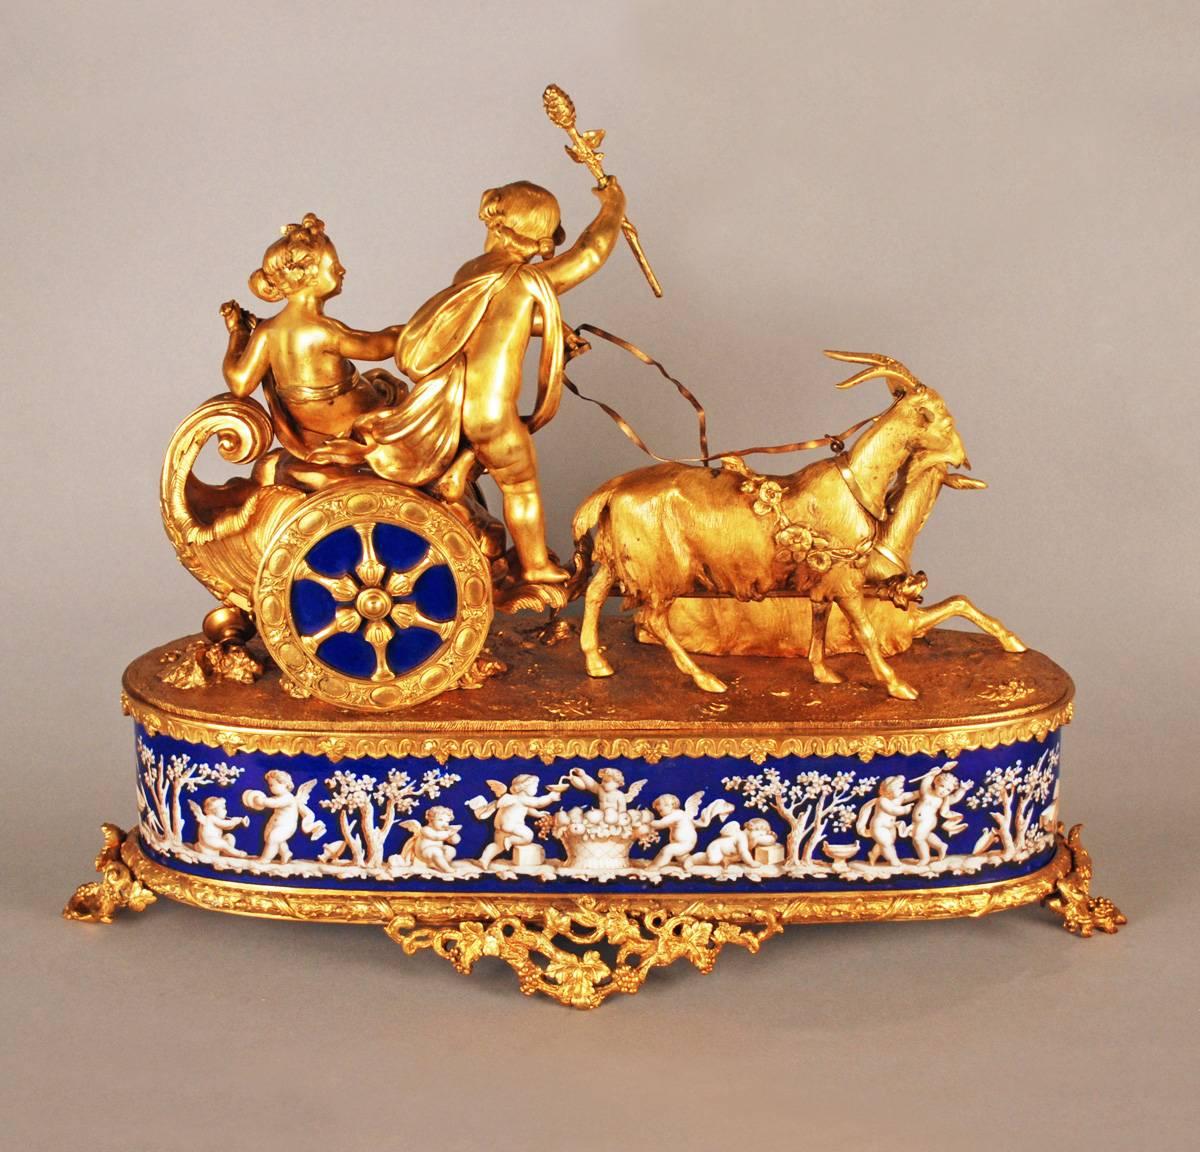 Erstaunliche und sehr seltene französische Uhr aus vergoldeter Bronze aus dem 19. Jahrhundert, die von zwei fein gearbeiteten Putten gekrönt wird, die auf einem Wagen reiten, der von einem Paar wunderbar detaillierter Ziegen gezogen wird.

Das